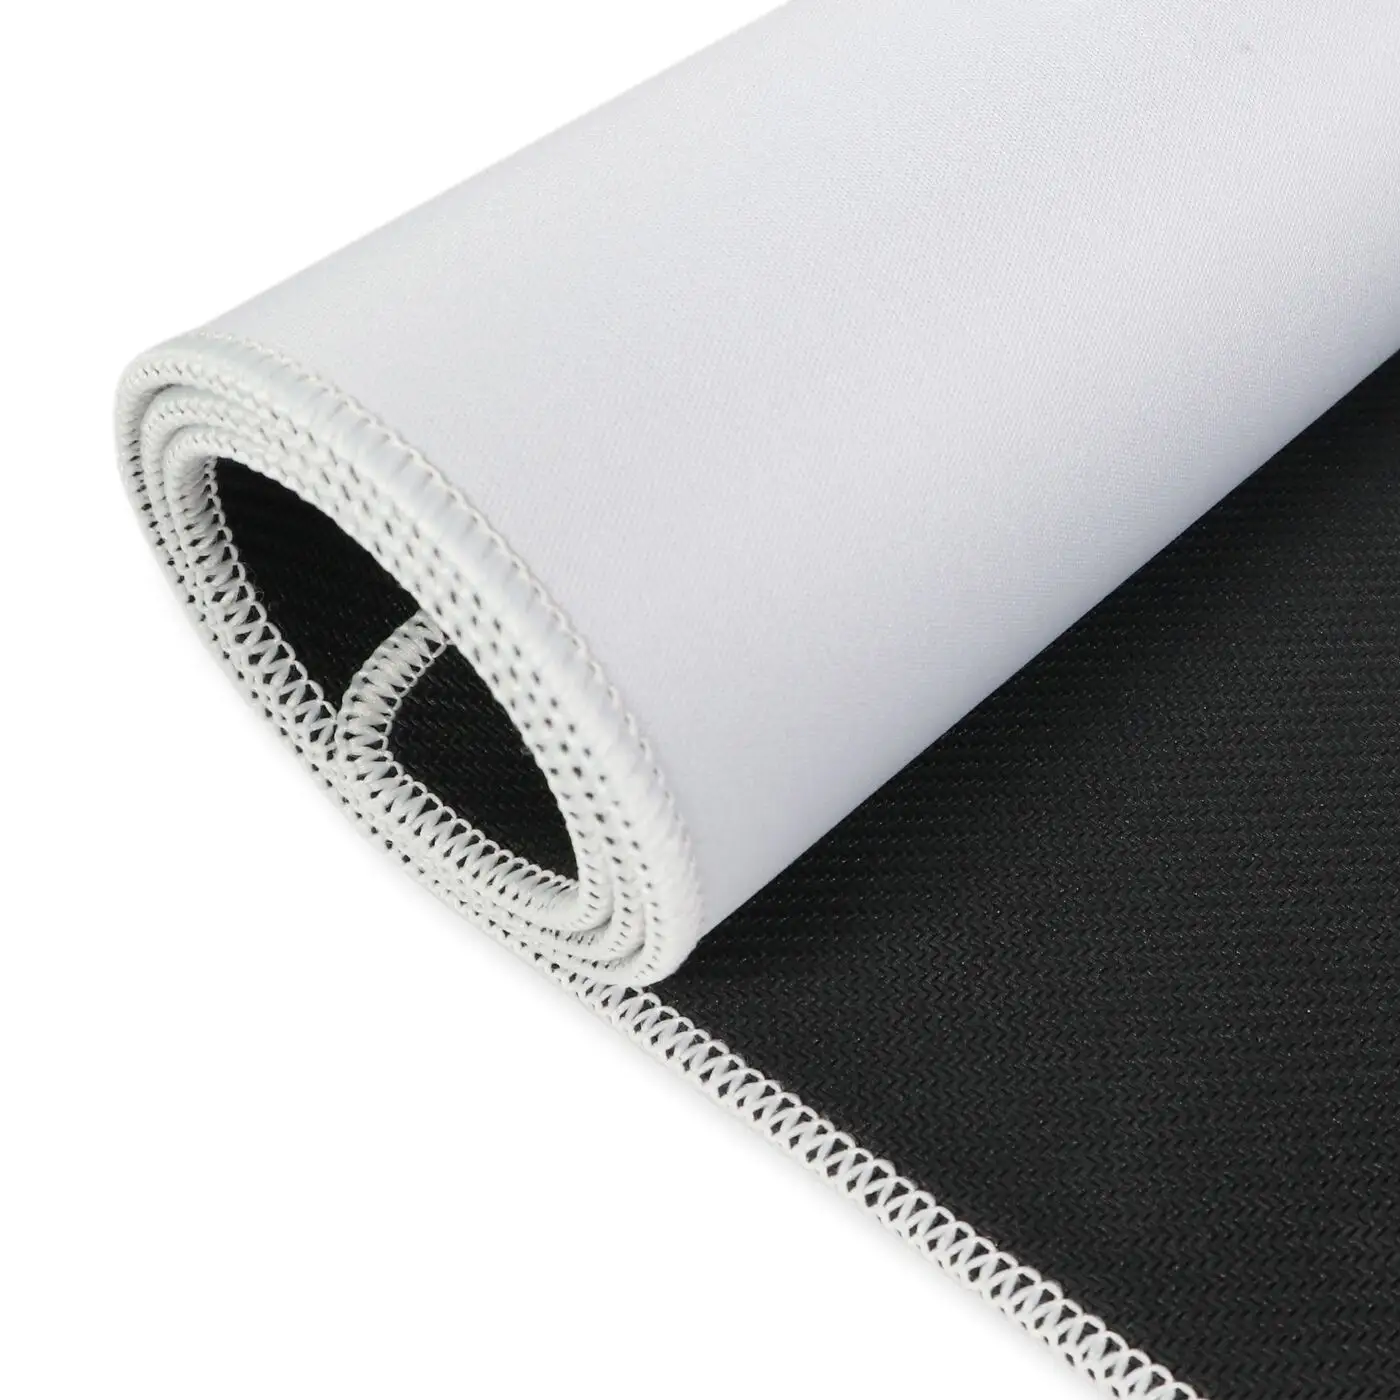 Tapis de jeu Yugioh de haute qualité tapis de combat en caoutchouc blanc tapis de souris pour l'impression par sublimation thermique tapis de jeu en néoprène 60x44